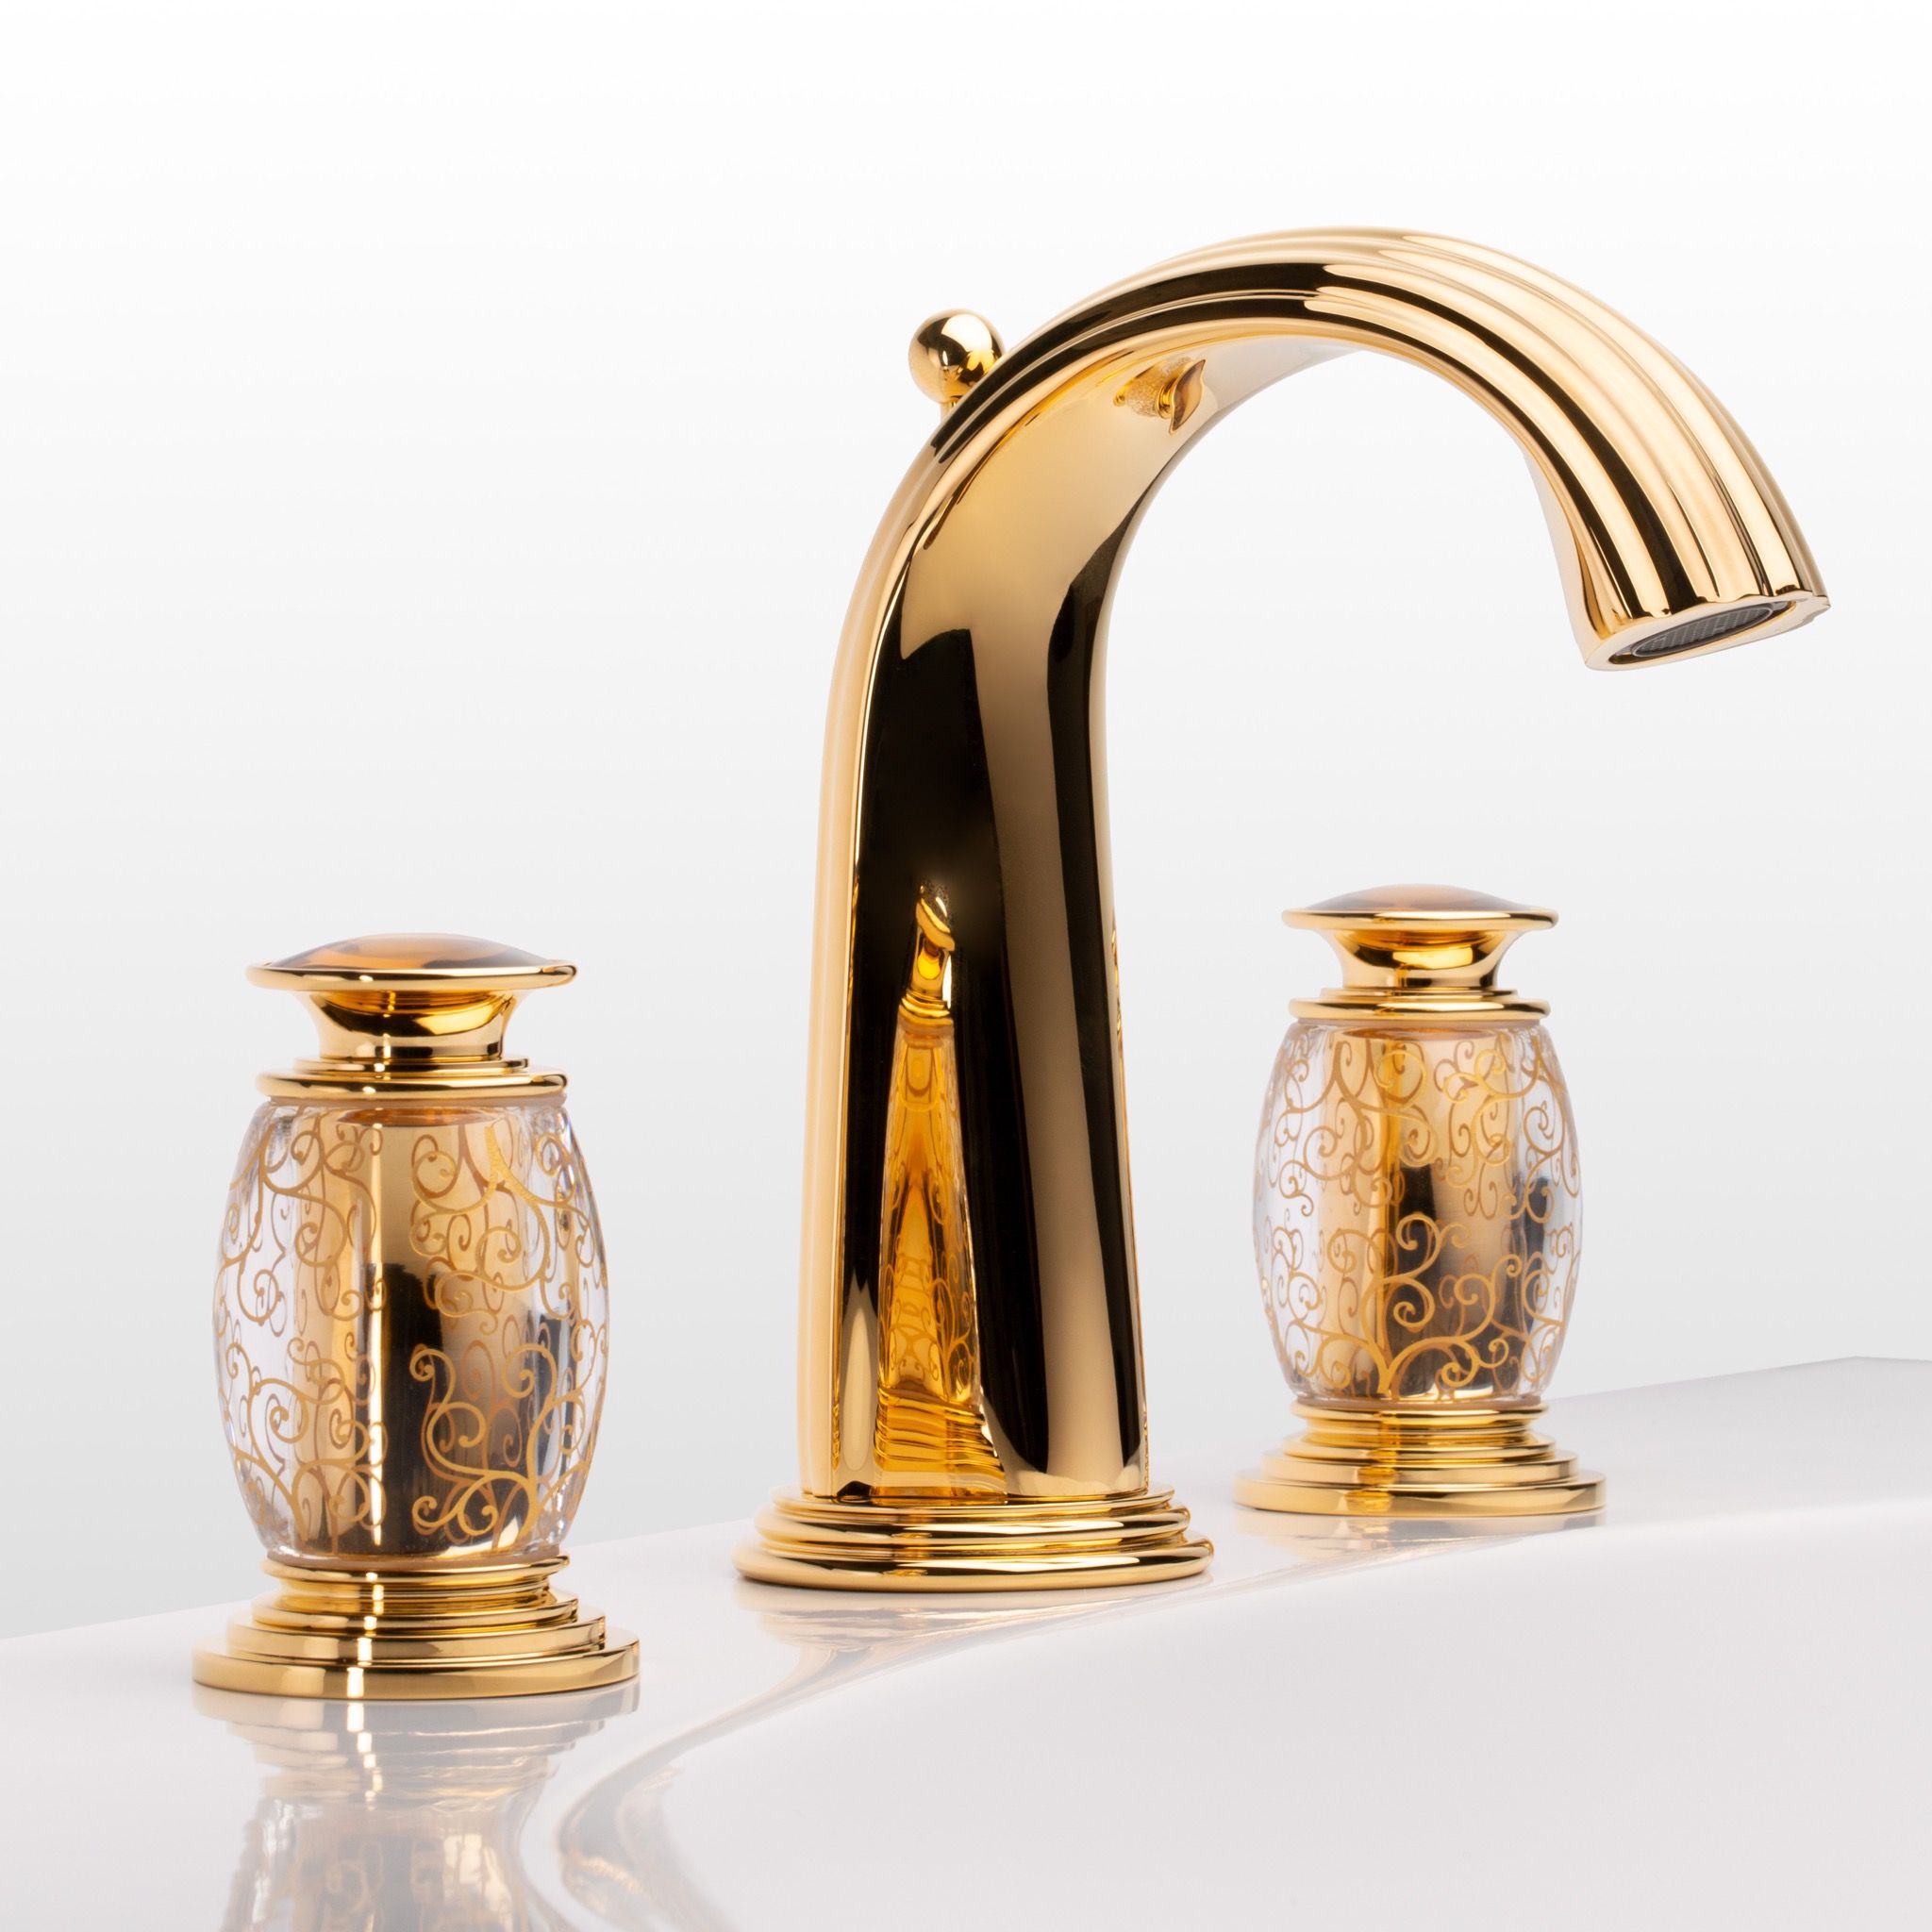  Vòi chậu rửa mặt cổ điển Chenonceau polished gold bằng đồng - 1301 